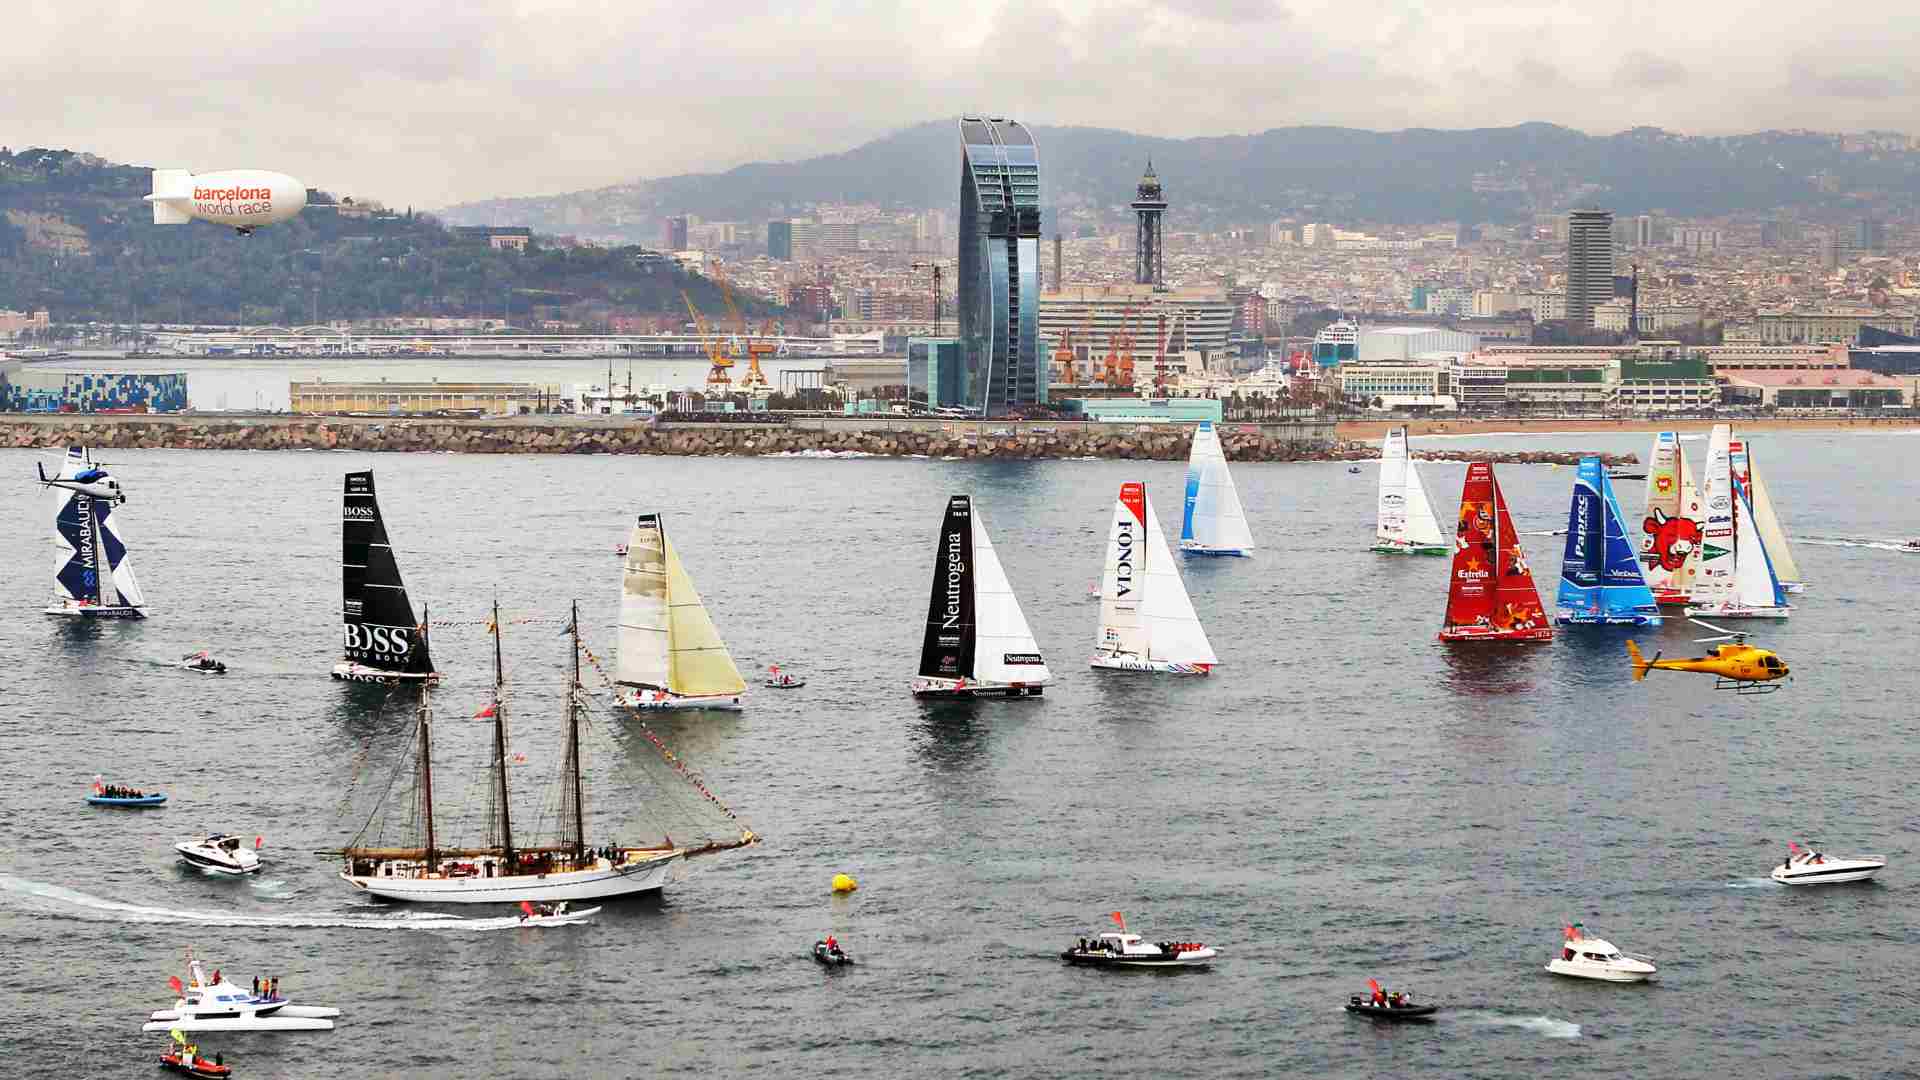 La incertidumbre política y presupuestaria obliga a suspender la regata Barcelona World Race